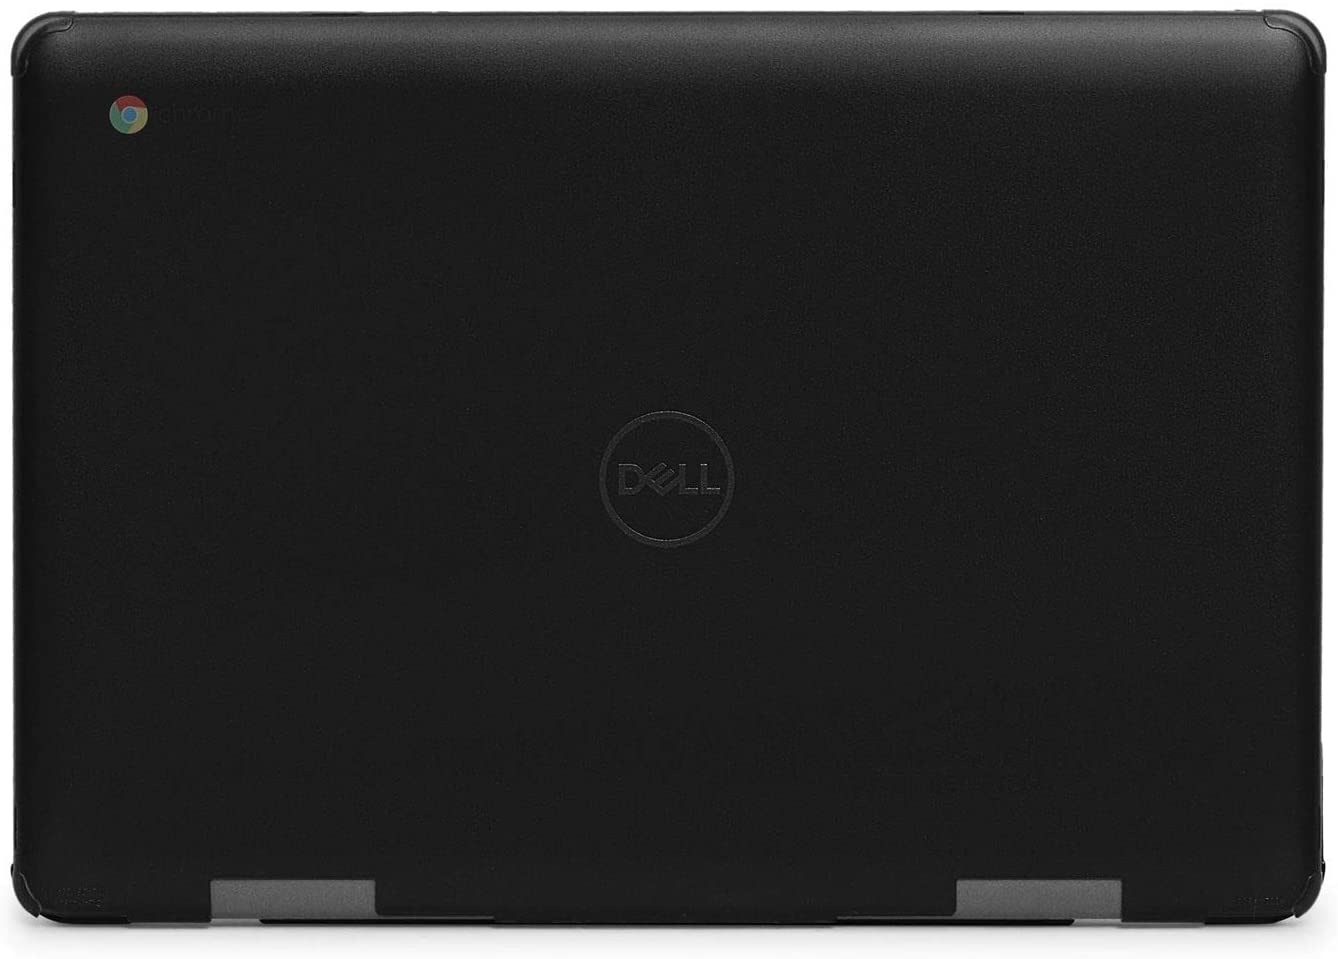 Carcasa rígida para ordenador portátil Dell Latitude 5400 Chromebook Enterprise de 14 negro